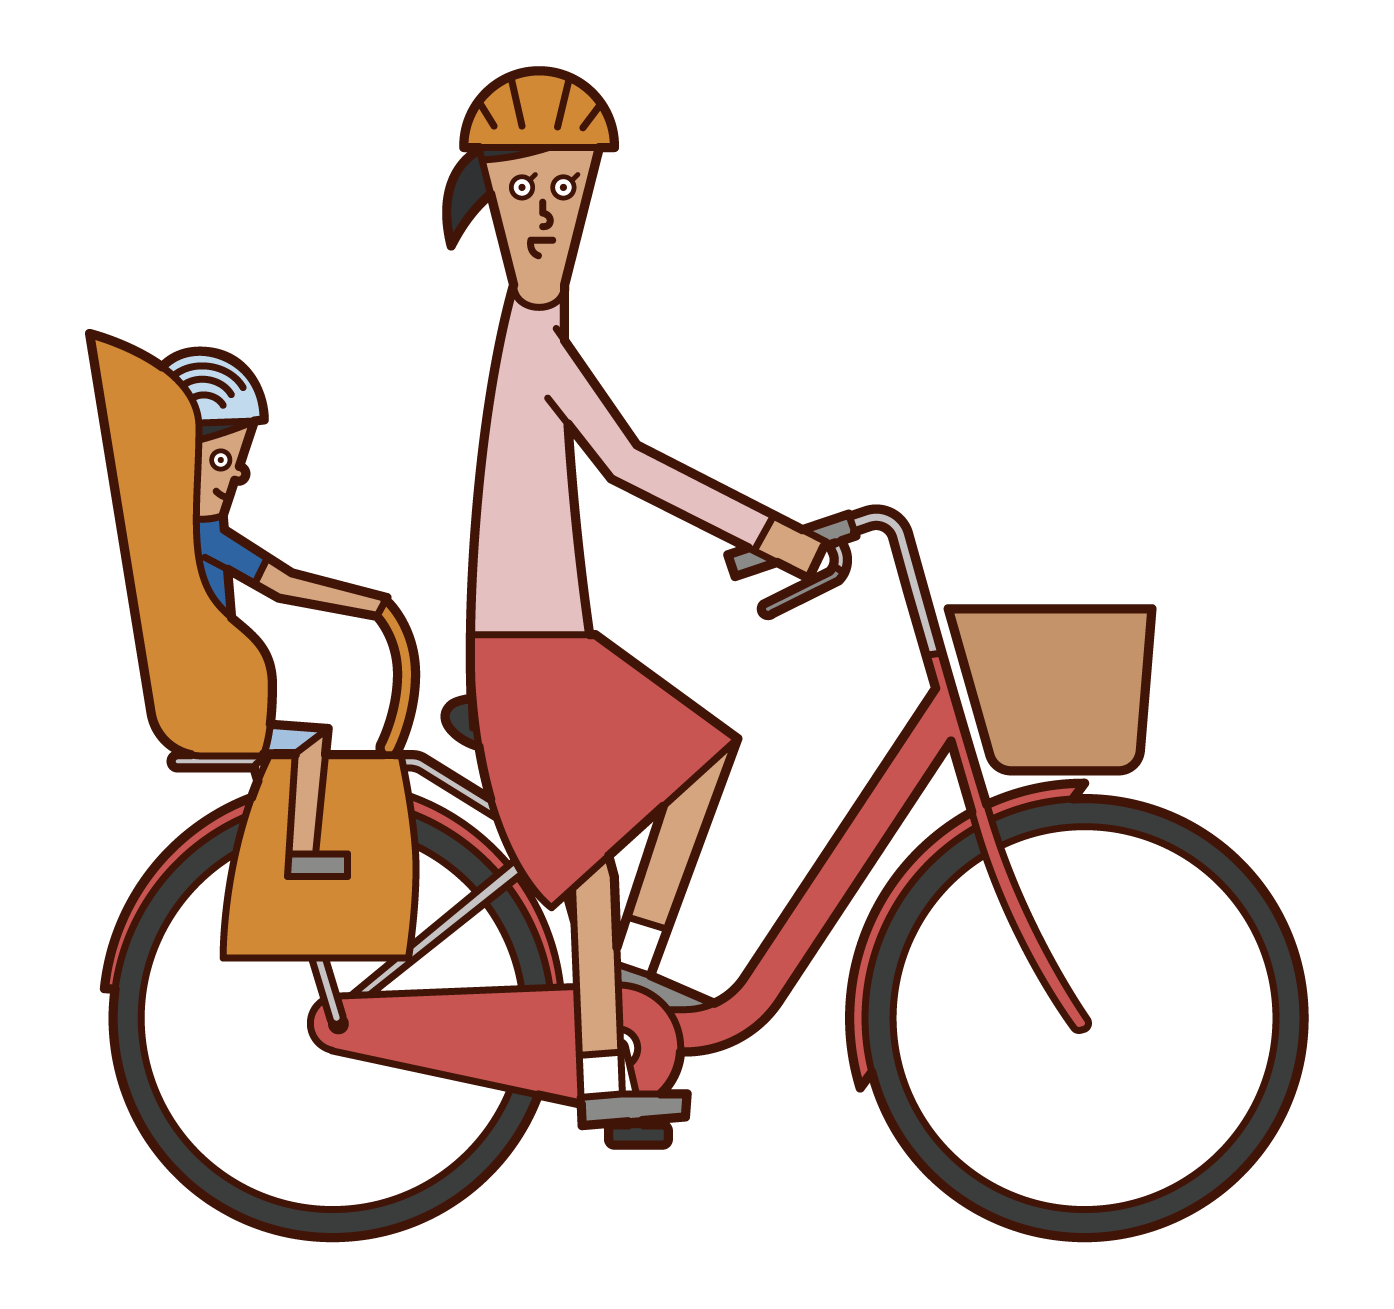 자전거를 탈 때 아이들과 함께 달리는 사람 (여성)의 그림